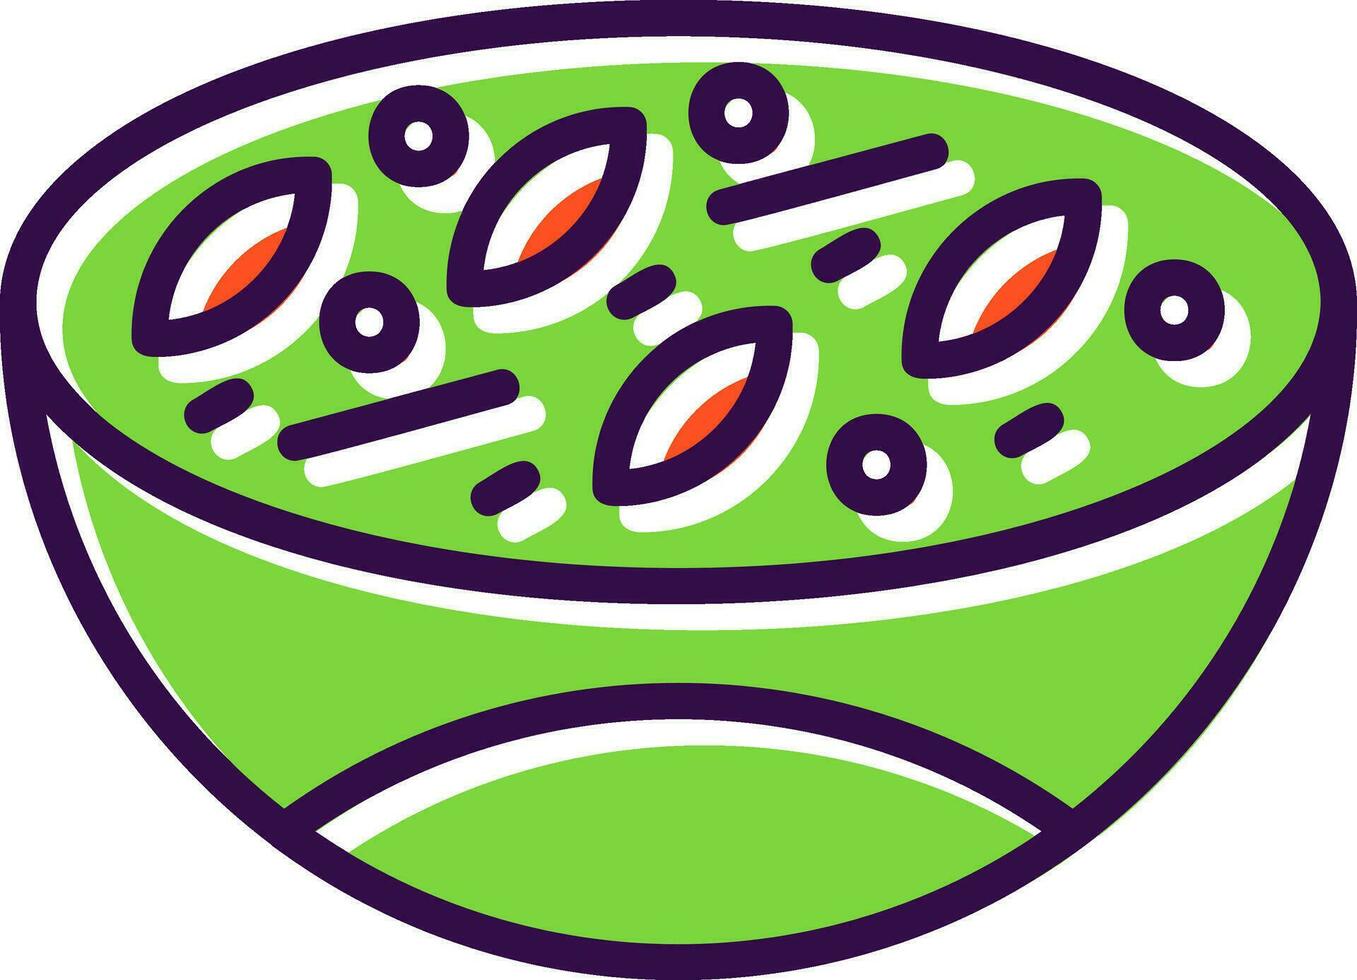 grön curry vektor ikon design